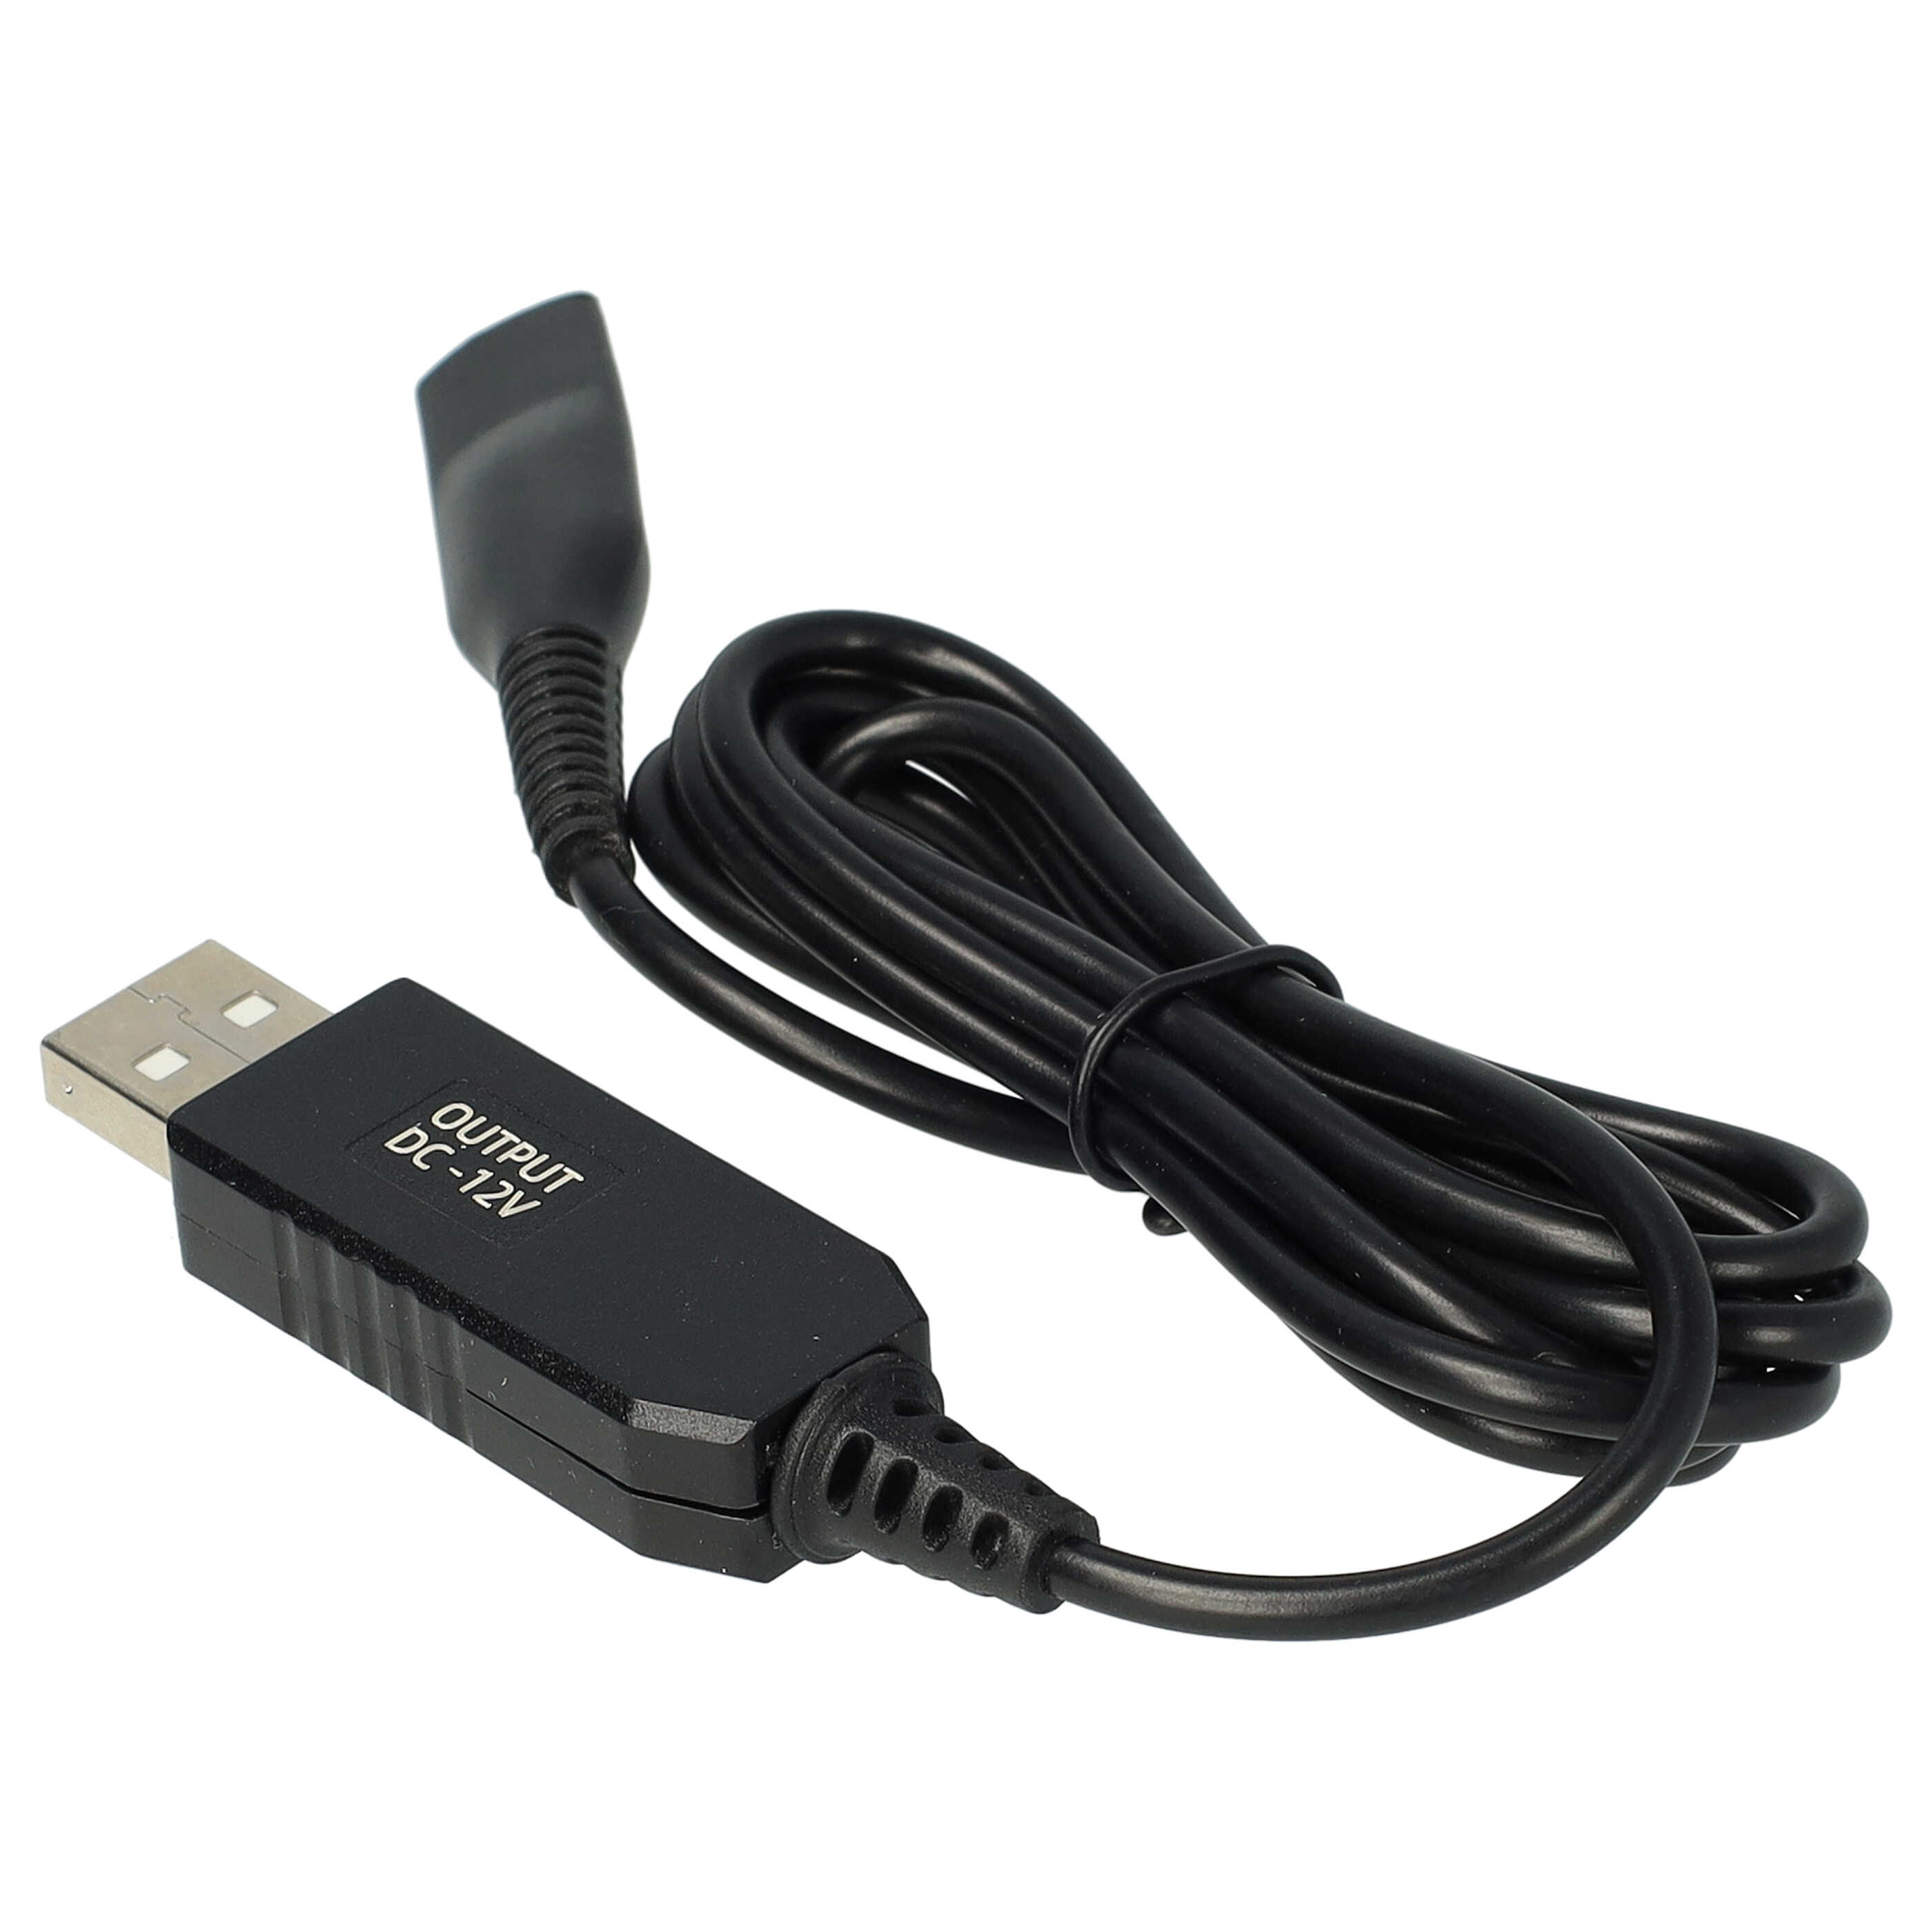 USB Ladekabel passend für Braun, Oral-B HC20 Rasierer, Epilierer, Zahnbürste u.a. - 120 cm